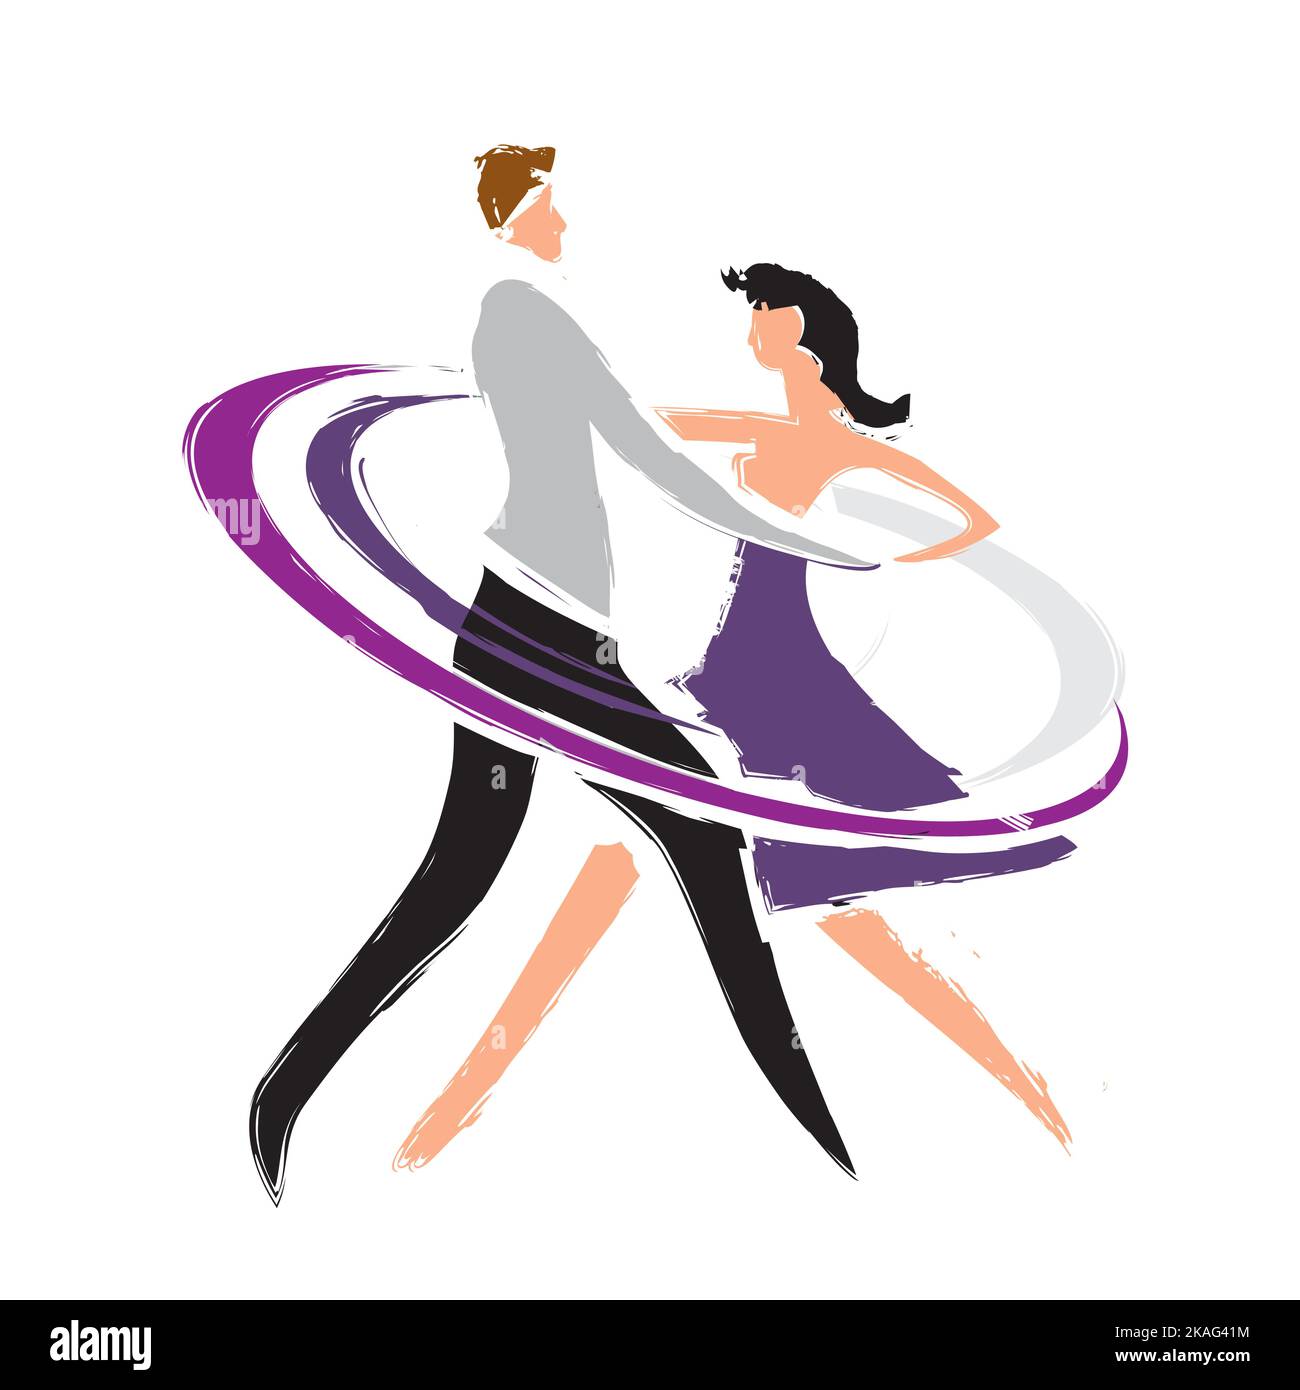 Danseuses de salle de bal, couple. Dessin stylisé avec silhouettes de couple dansant. Imitation du dessin au pinceau. Vecteur disponible. Illustration de Vecteur